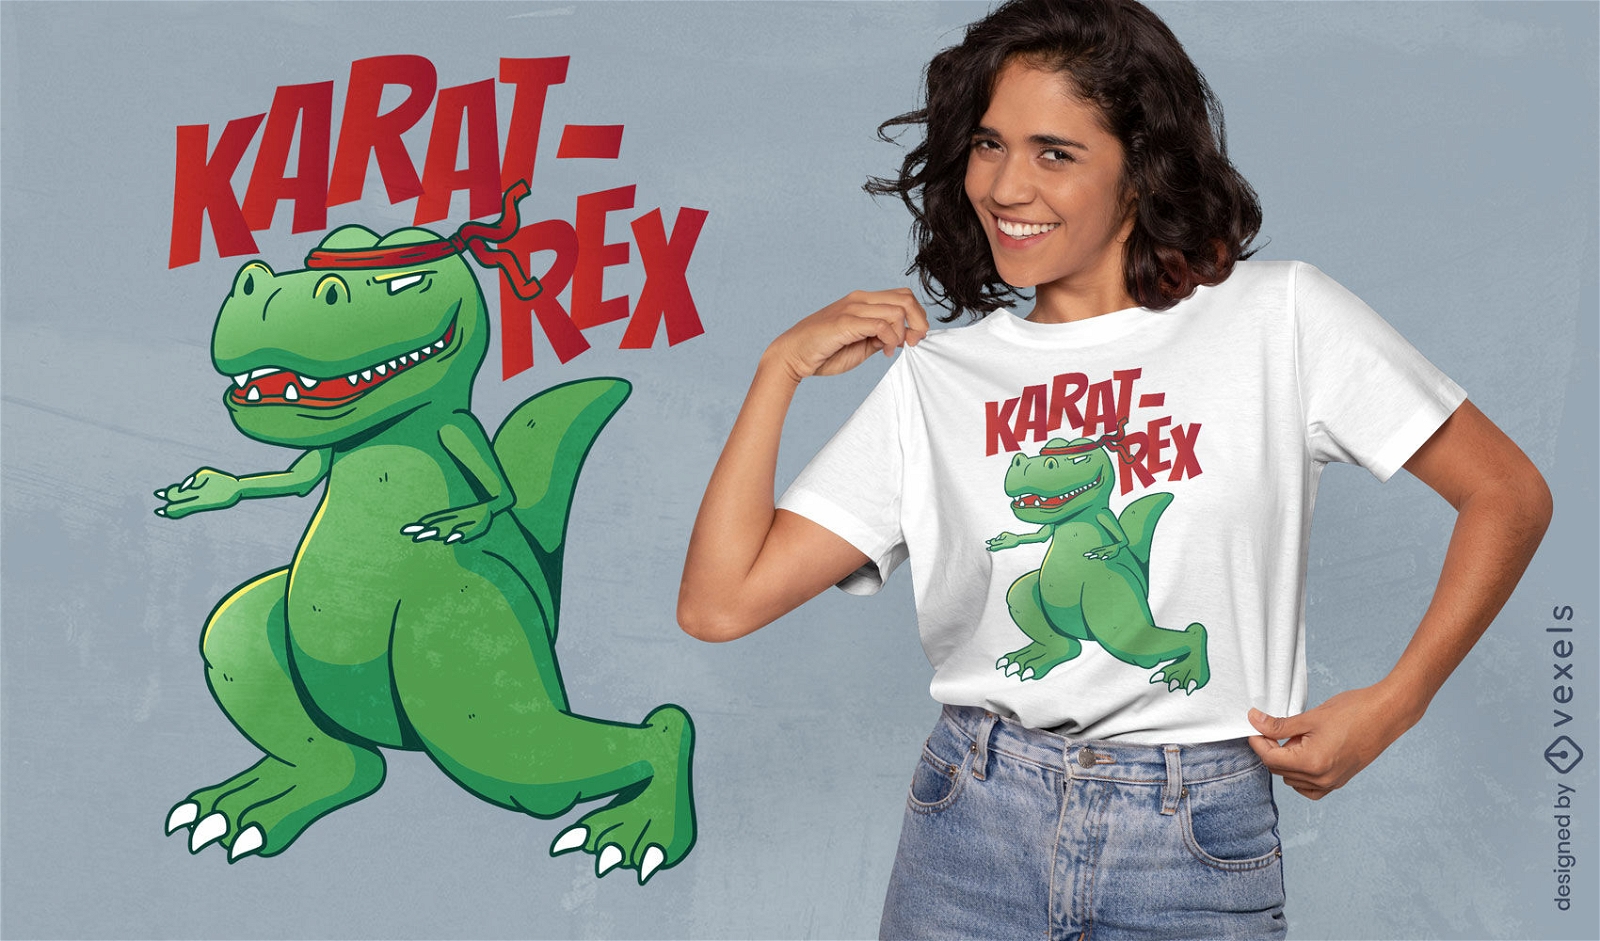 Karate t-rex t-shirt design